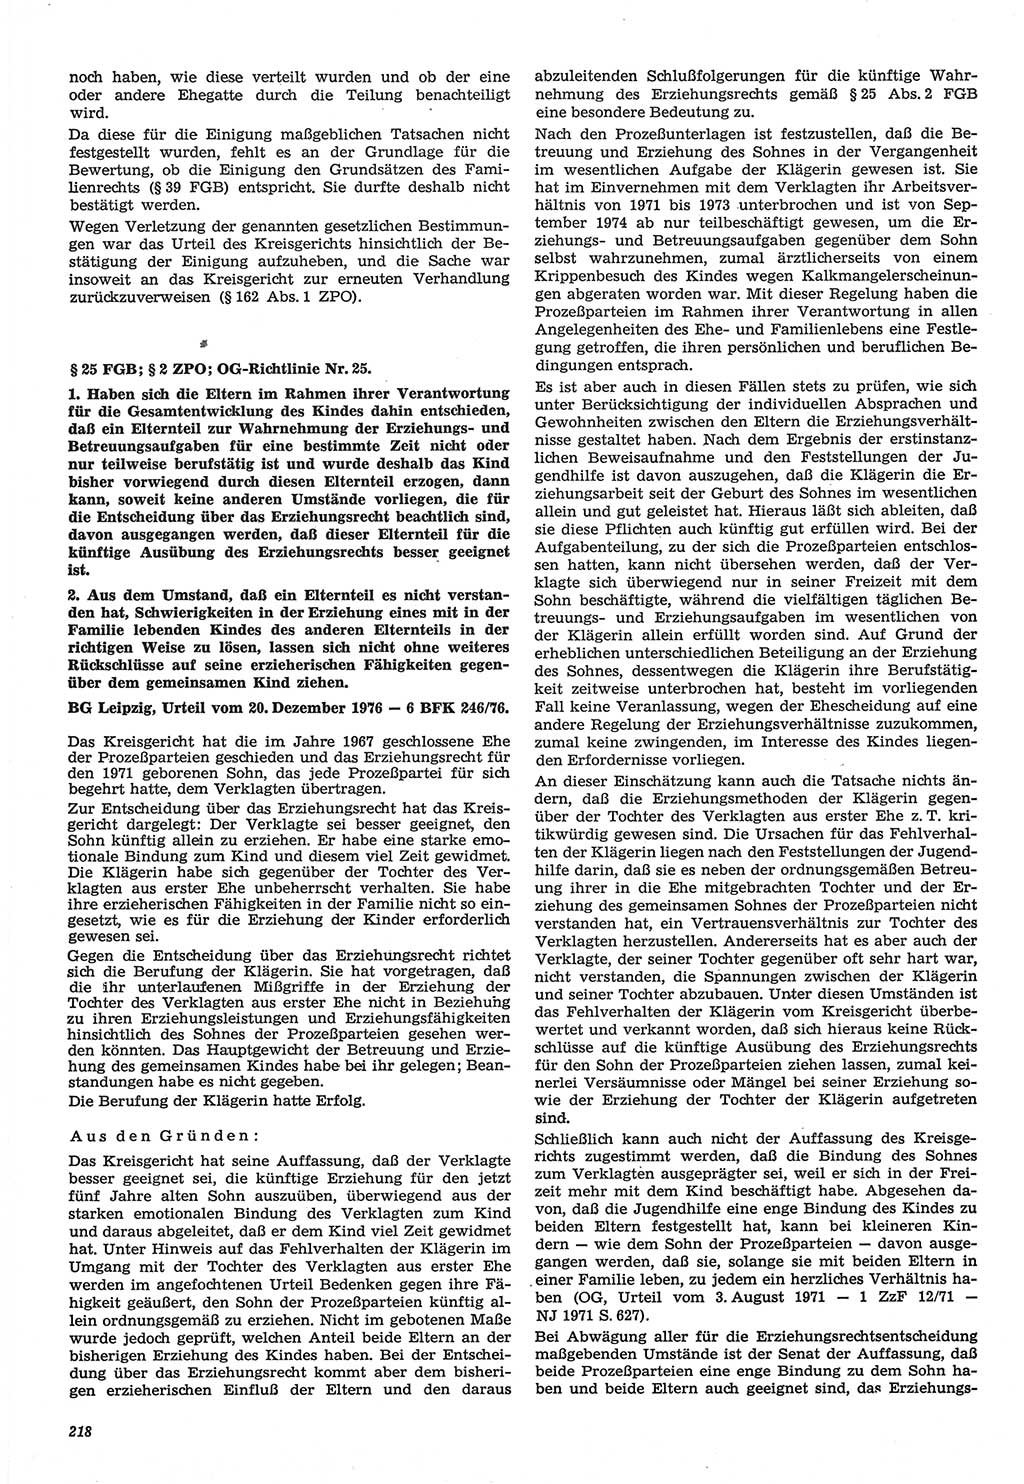 Neue Justiz (NJ), Zeitschrift für Recht und Rechtswissenschaft-Zeitschrift, sozialistisches Recht und Gesetzlichkeit, 31. Jahrgang 1977, Seite 218 (NJ DDR 1977, S. 218)